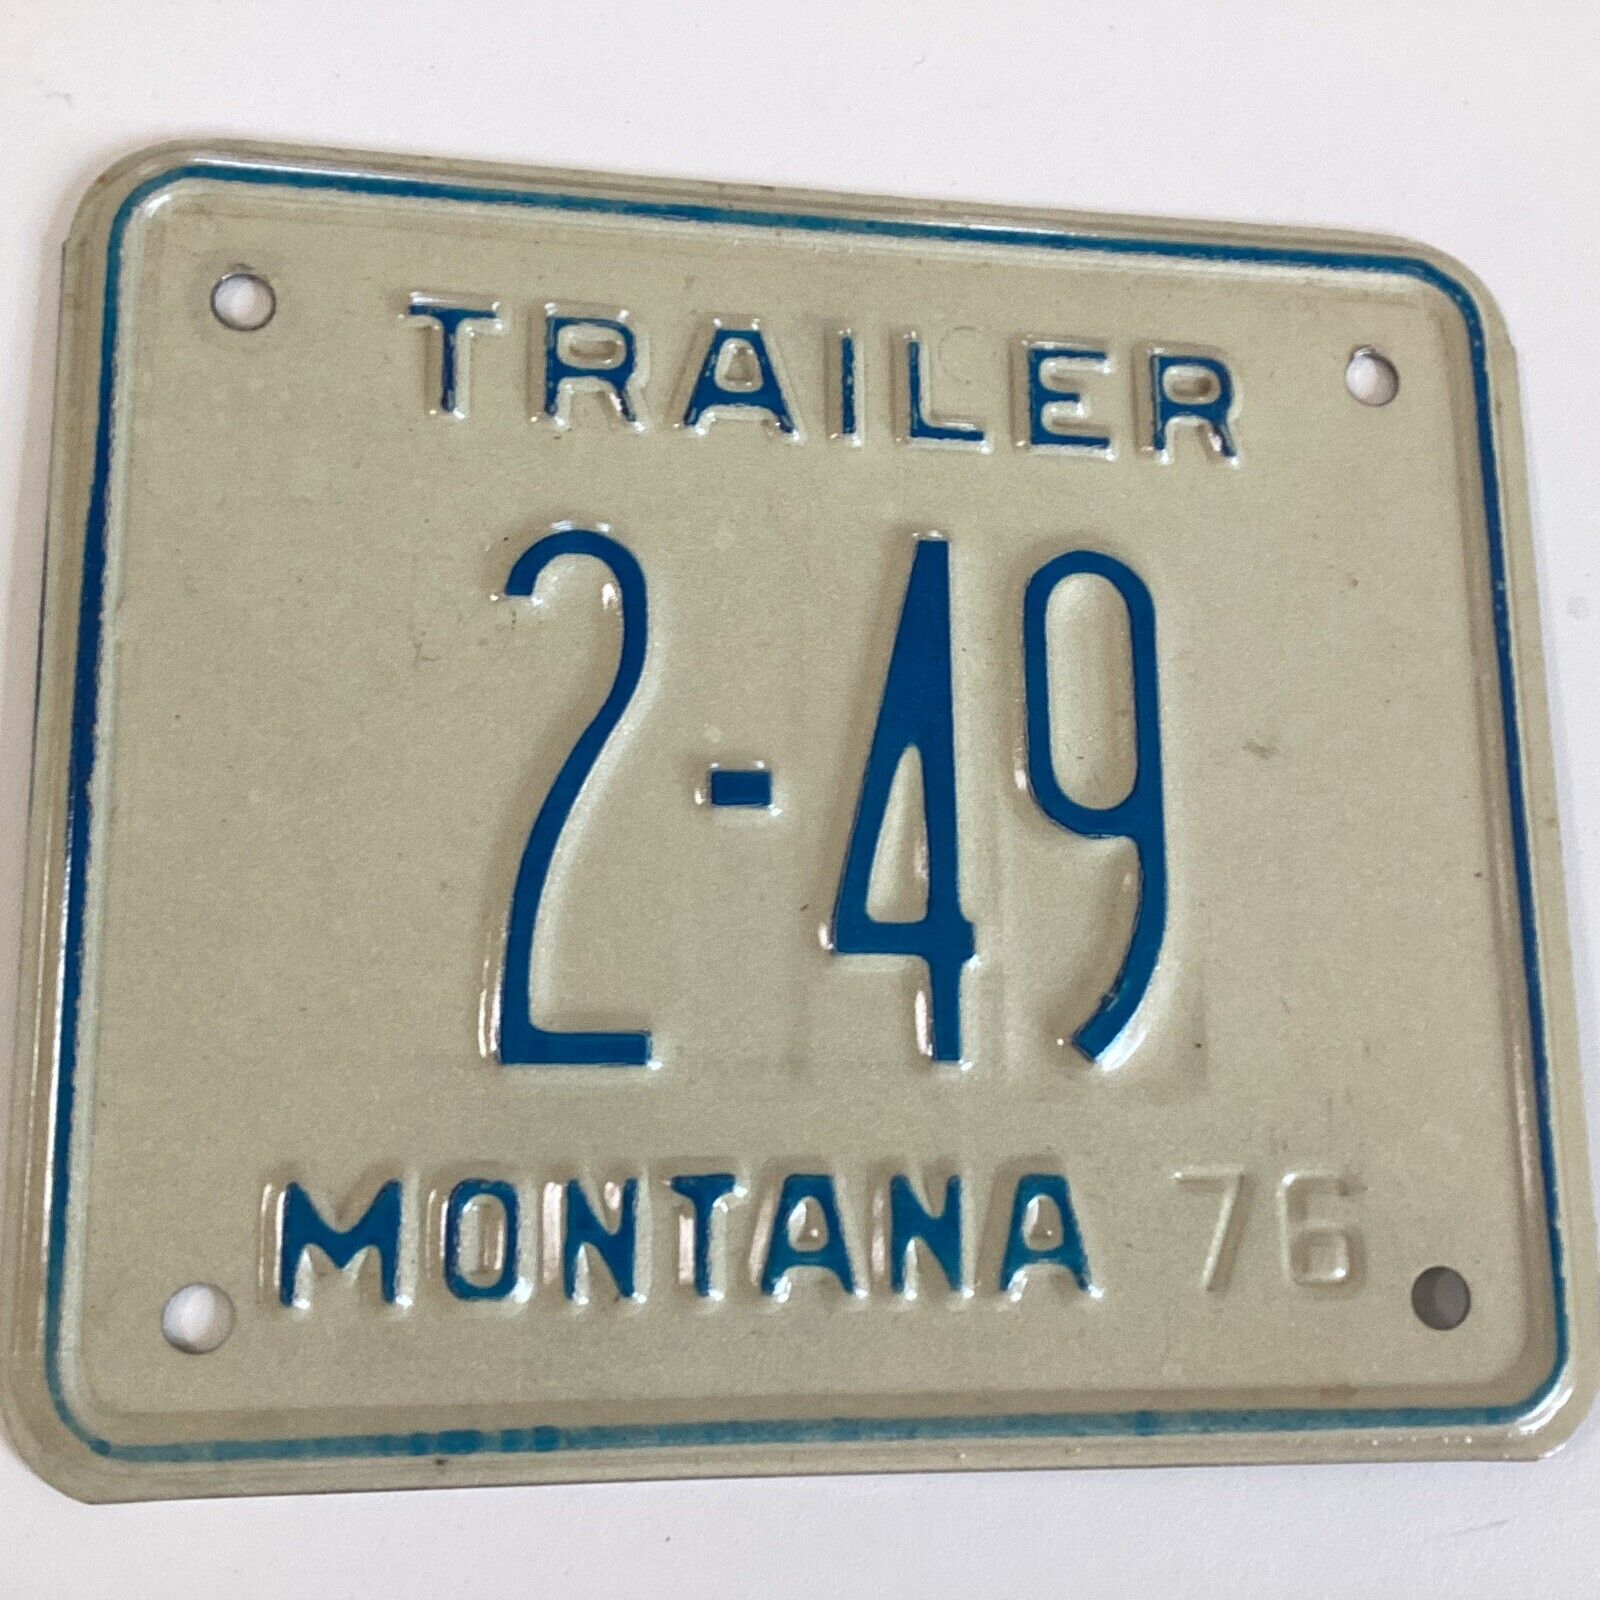 1976 MONTANA Cascade County Trailer License Plate 2-49